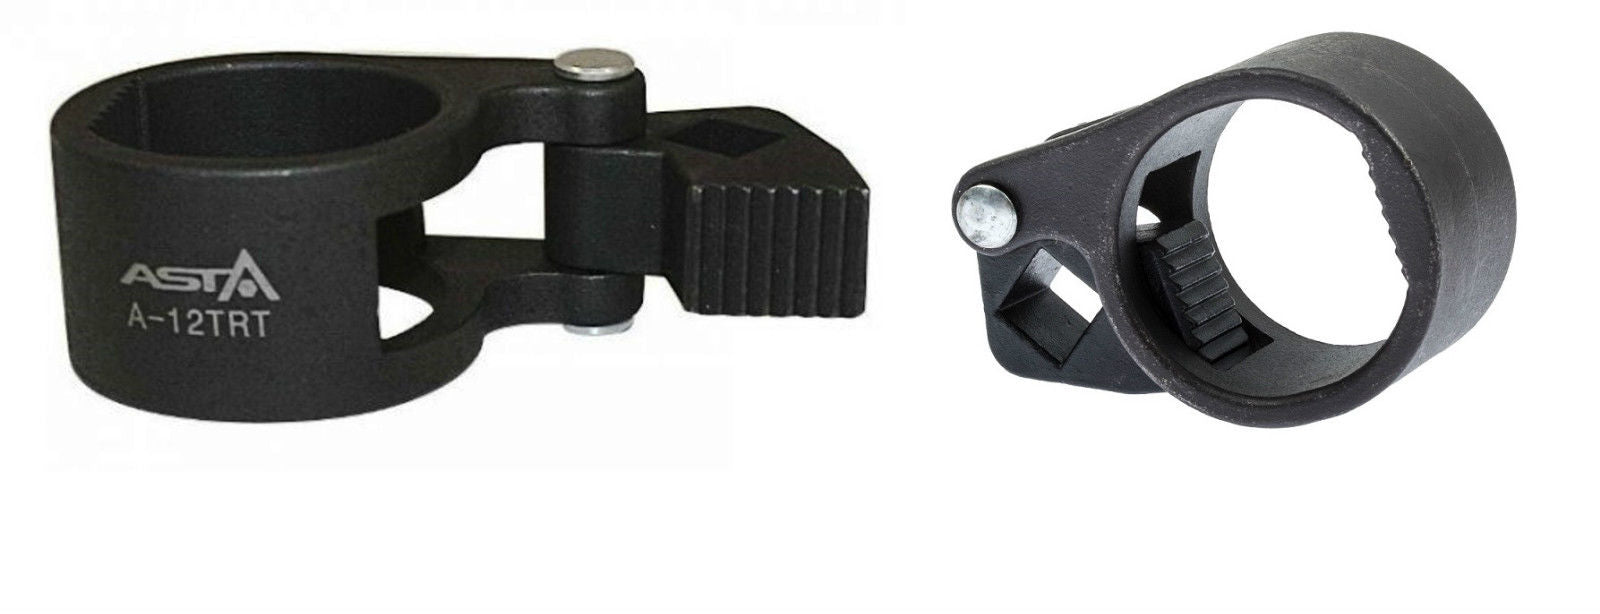 Outil auto-serrant pour rotule axiale 28-35 mm - MPS OUTILLAGE